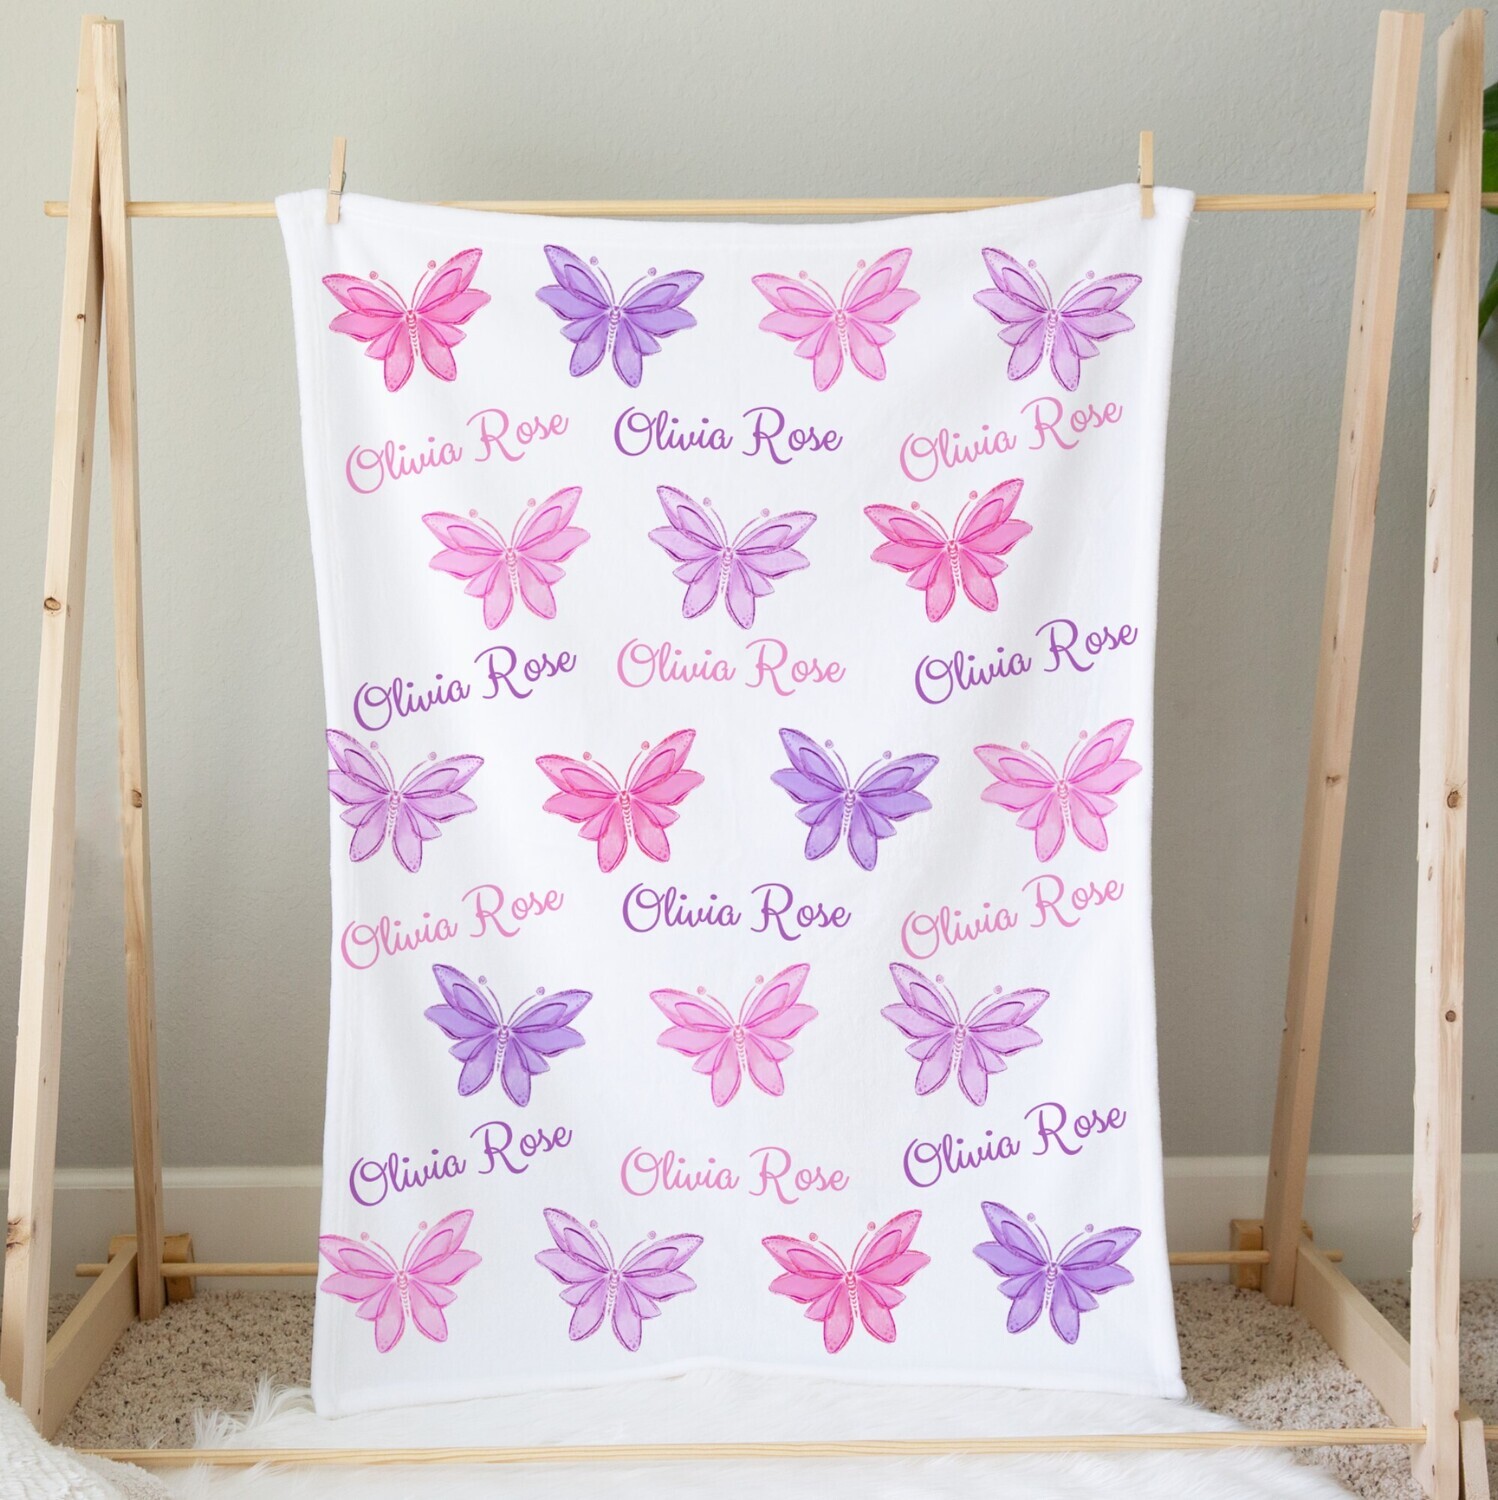  Butterfly Blanket, Butterfly Gifts for Women Girls